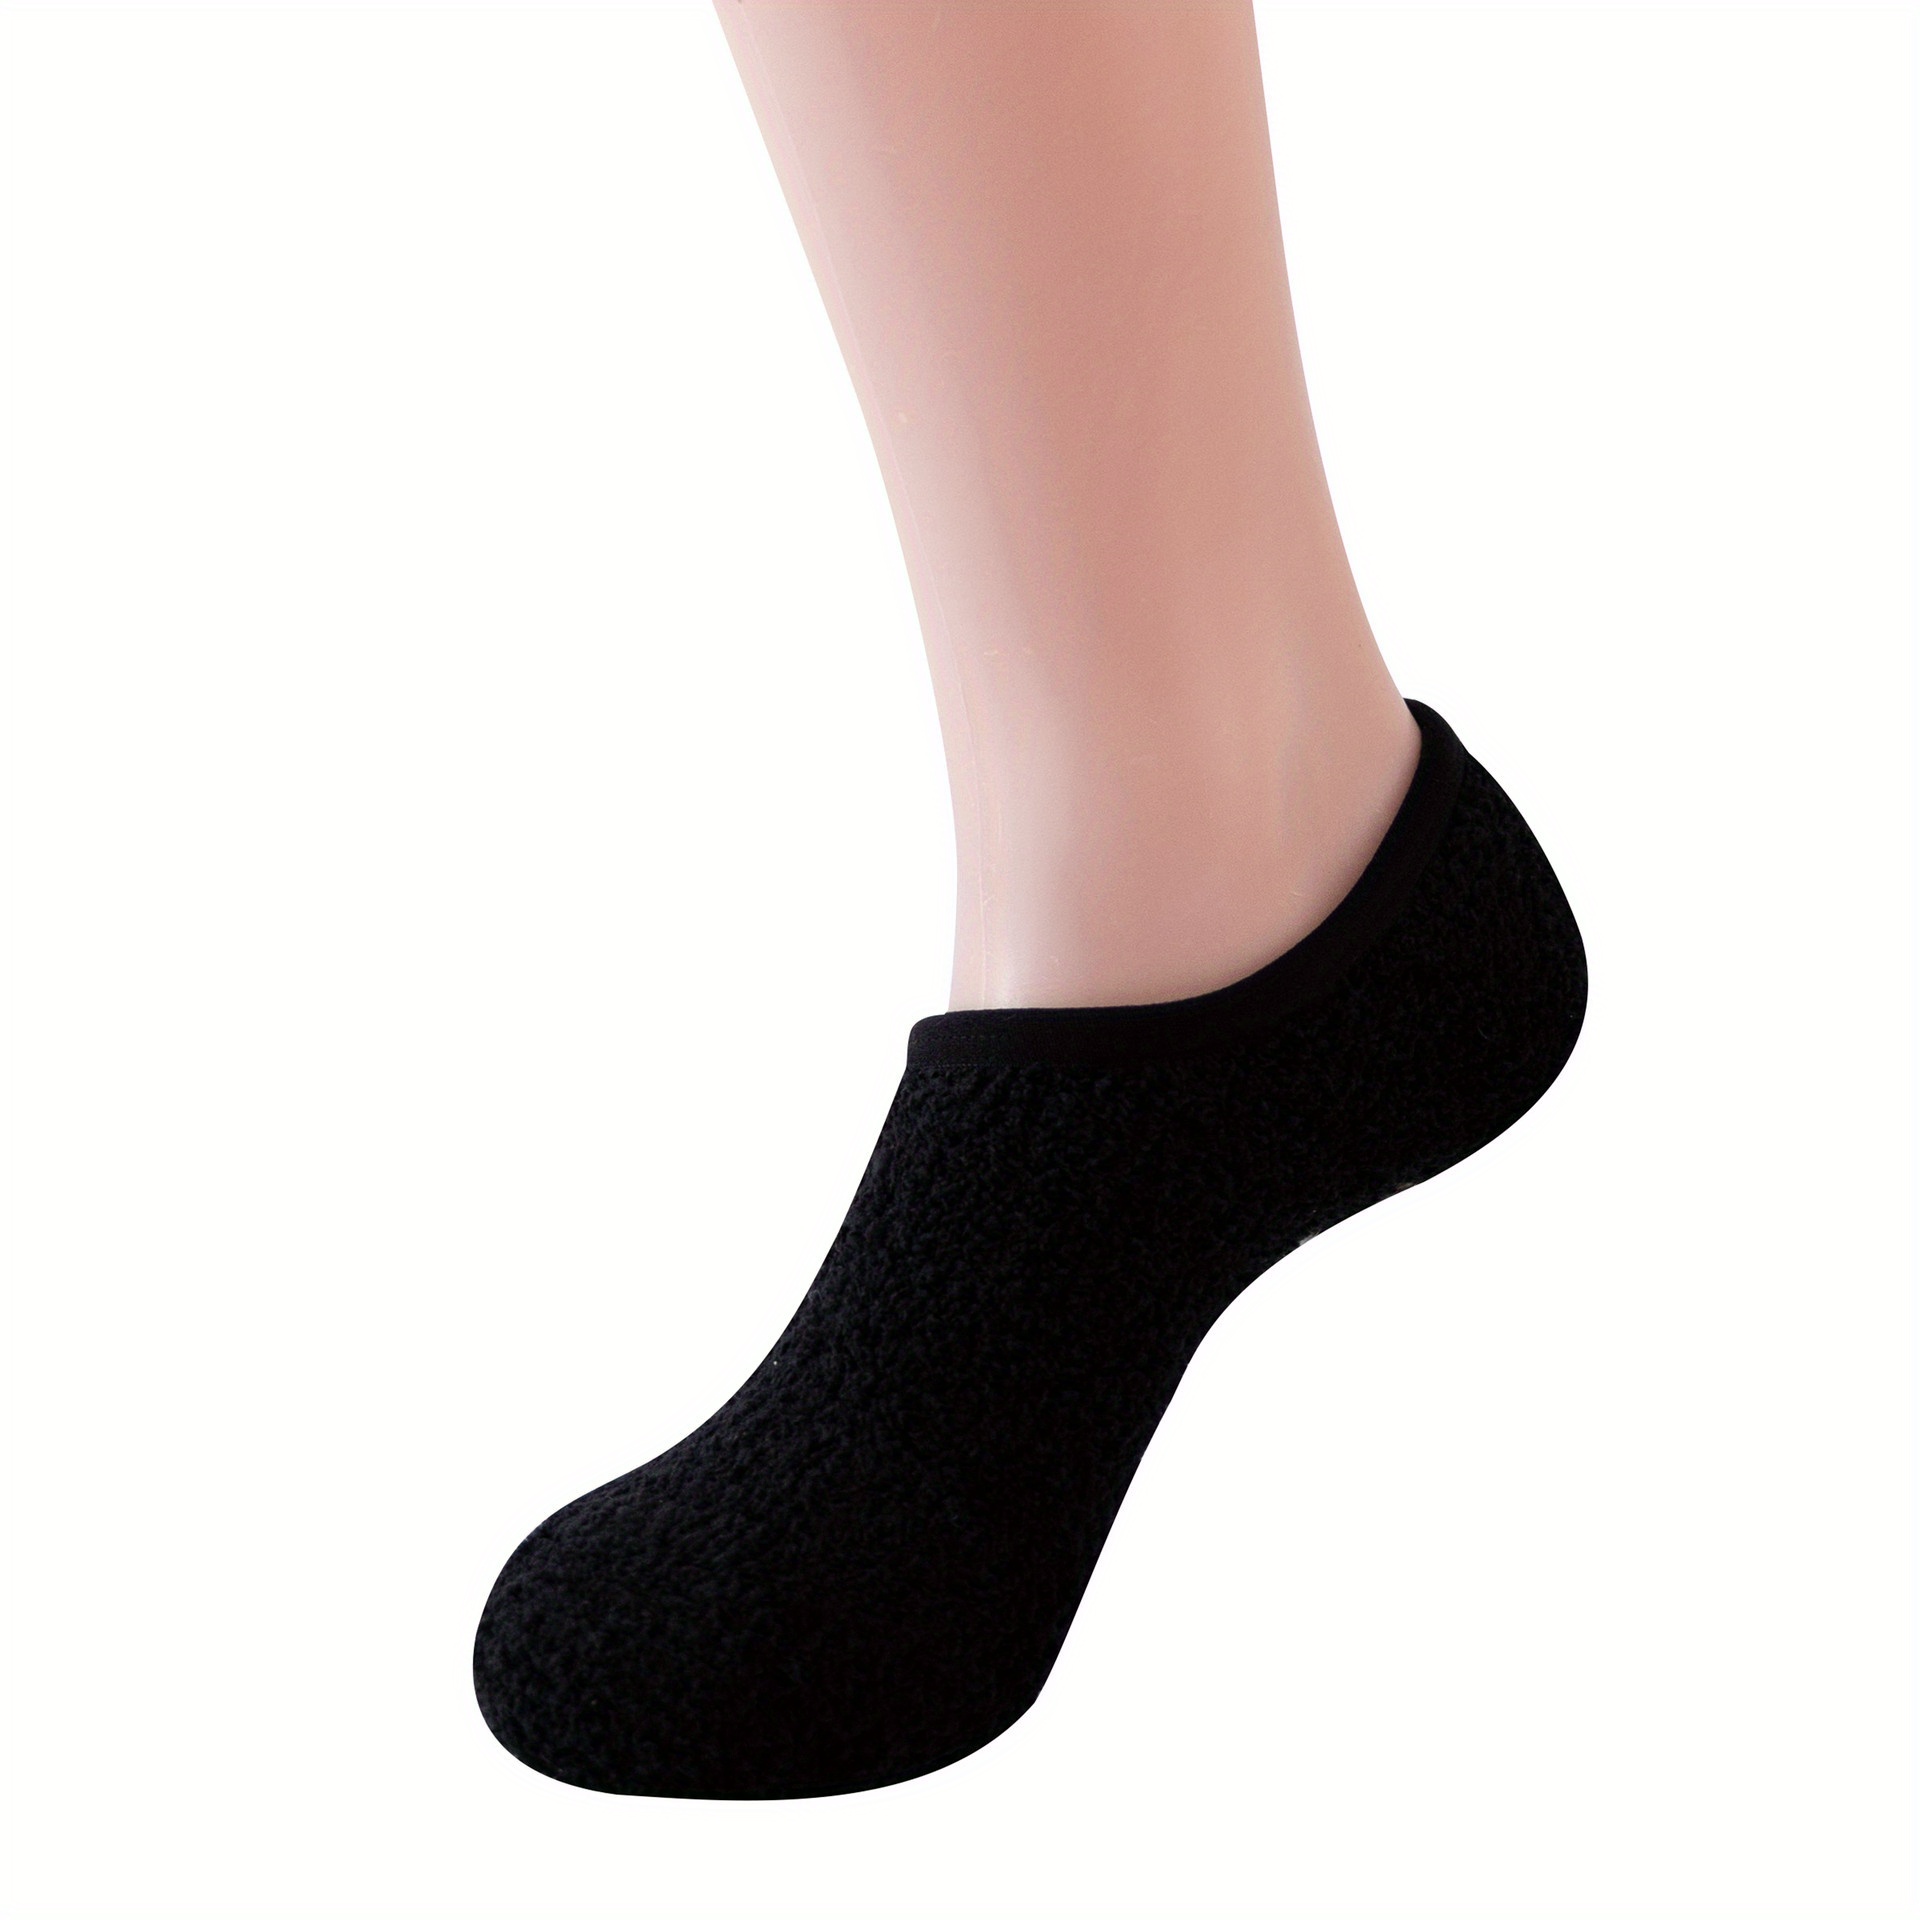 Bulinlulu Fuzzy Socks for Women with Grips,Warm Fuzzy Socks Sleep